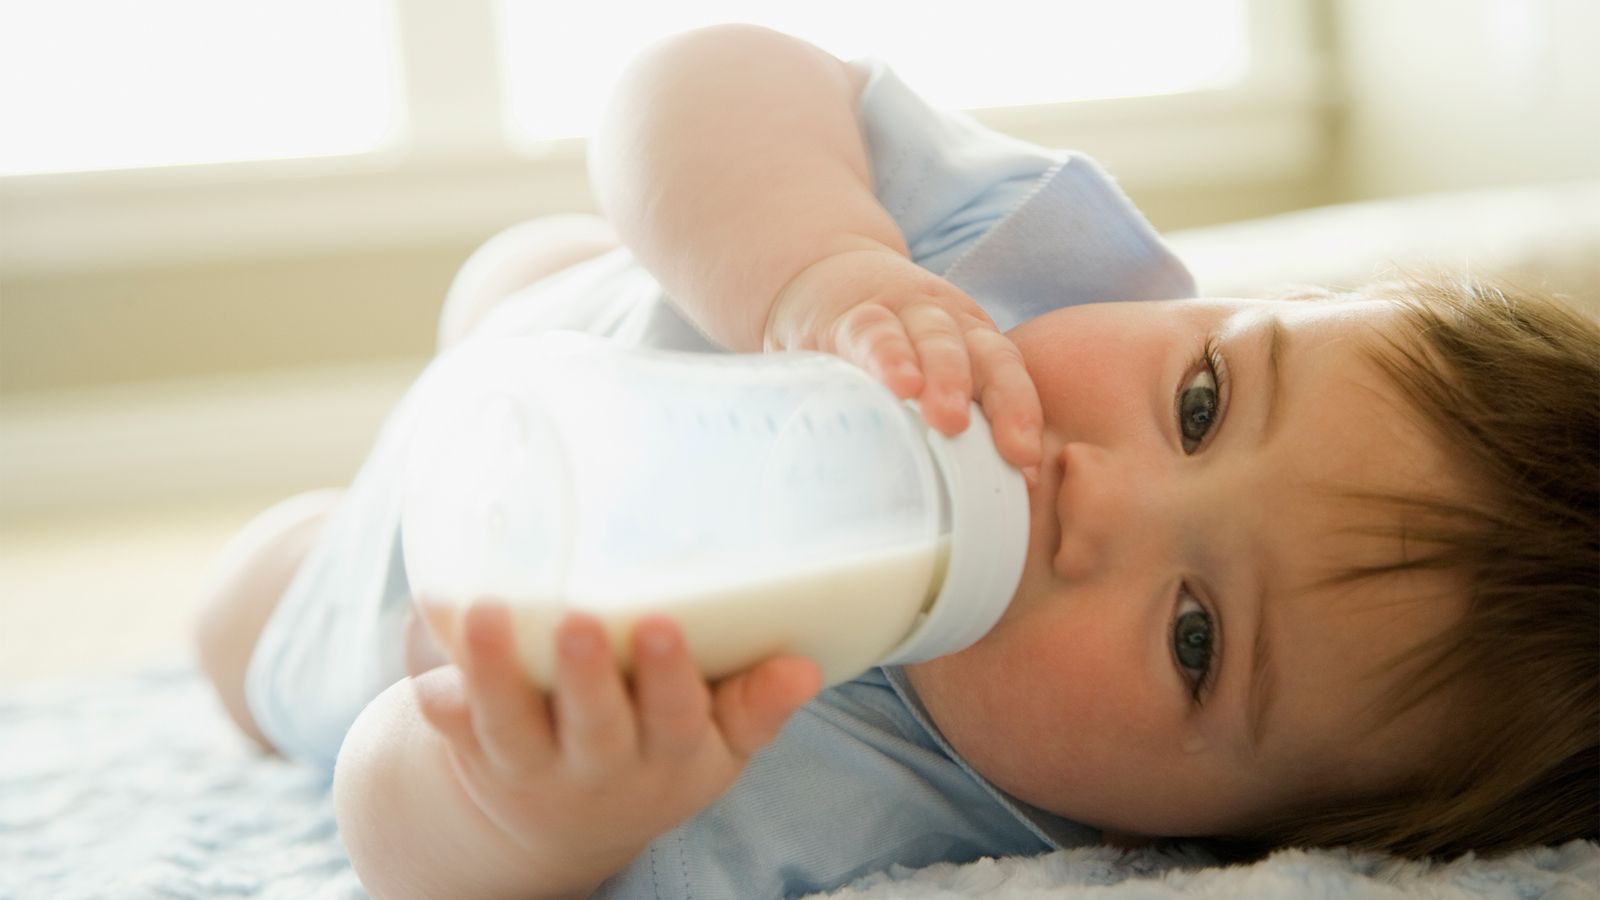 Baby trinkt Milch aus der Flasche